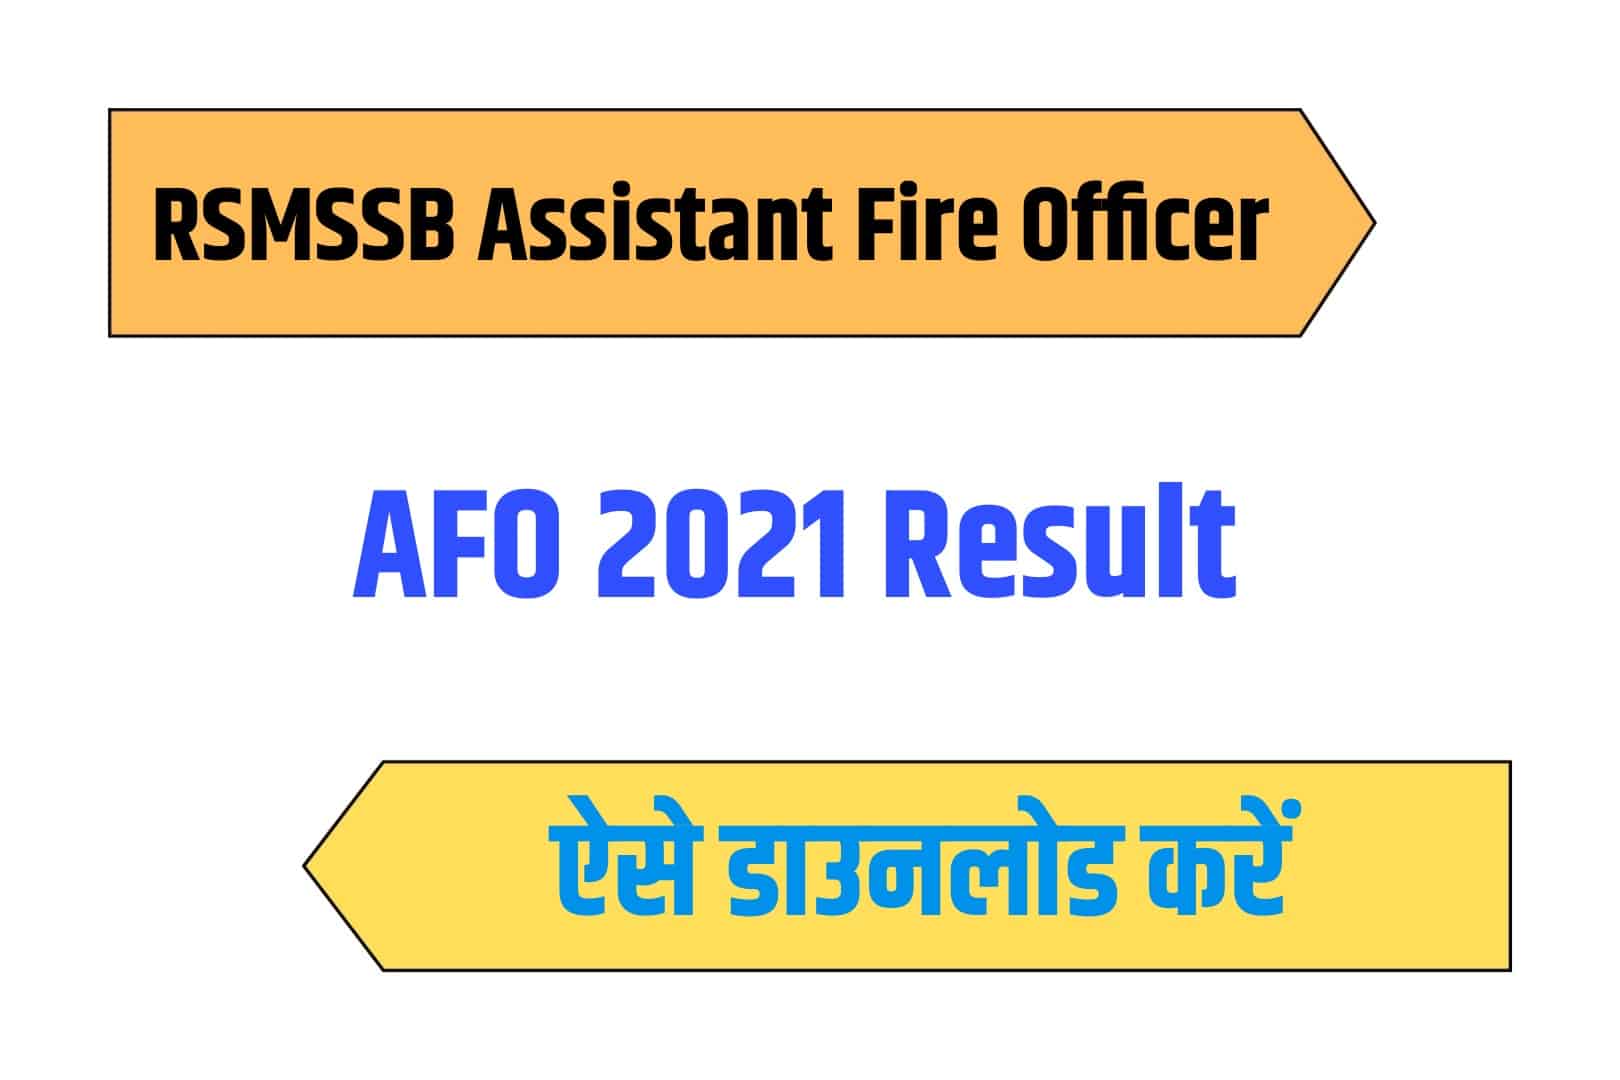 RSMSSB Assistant Fire Officer AFO 2021 Result